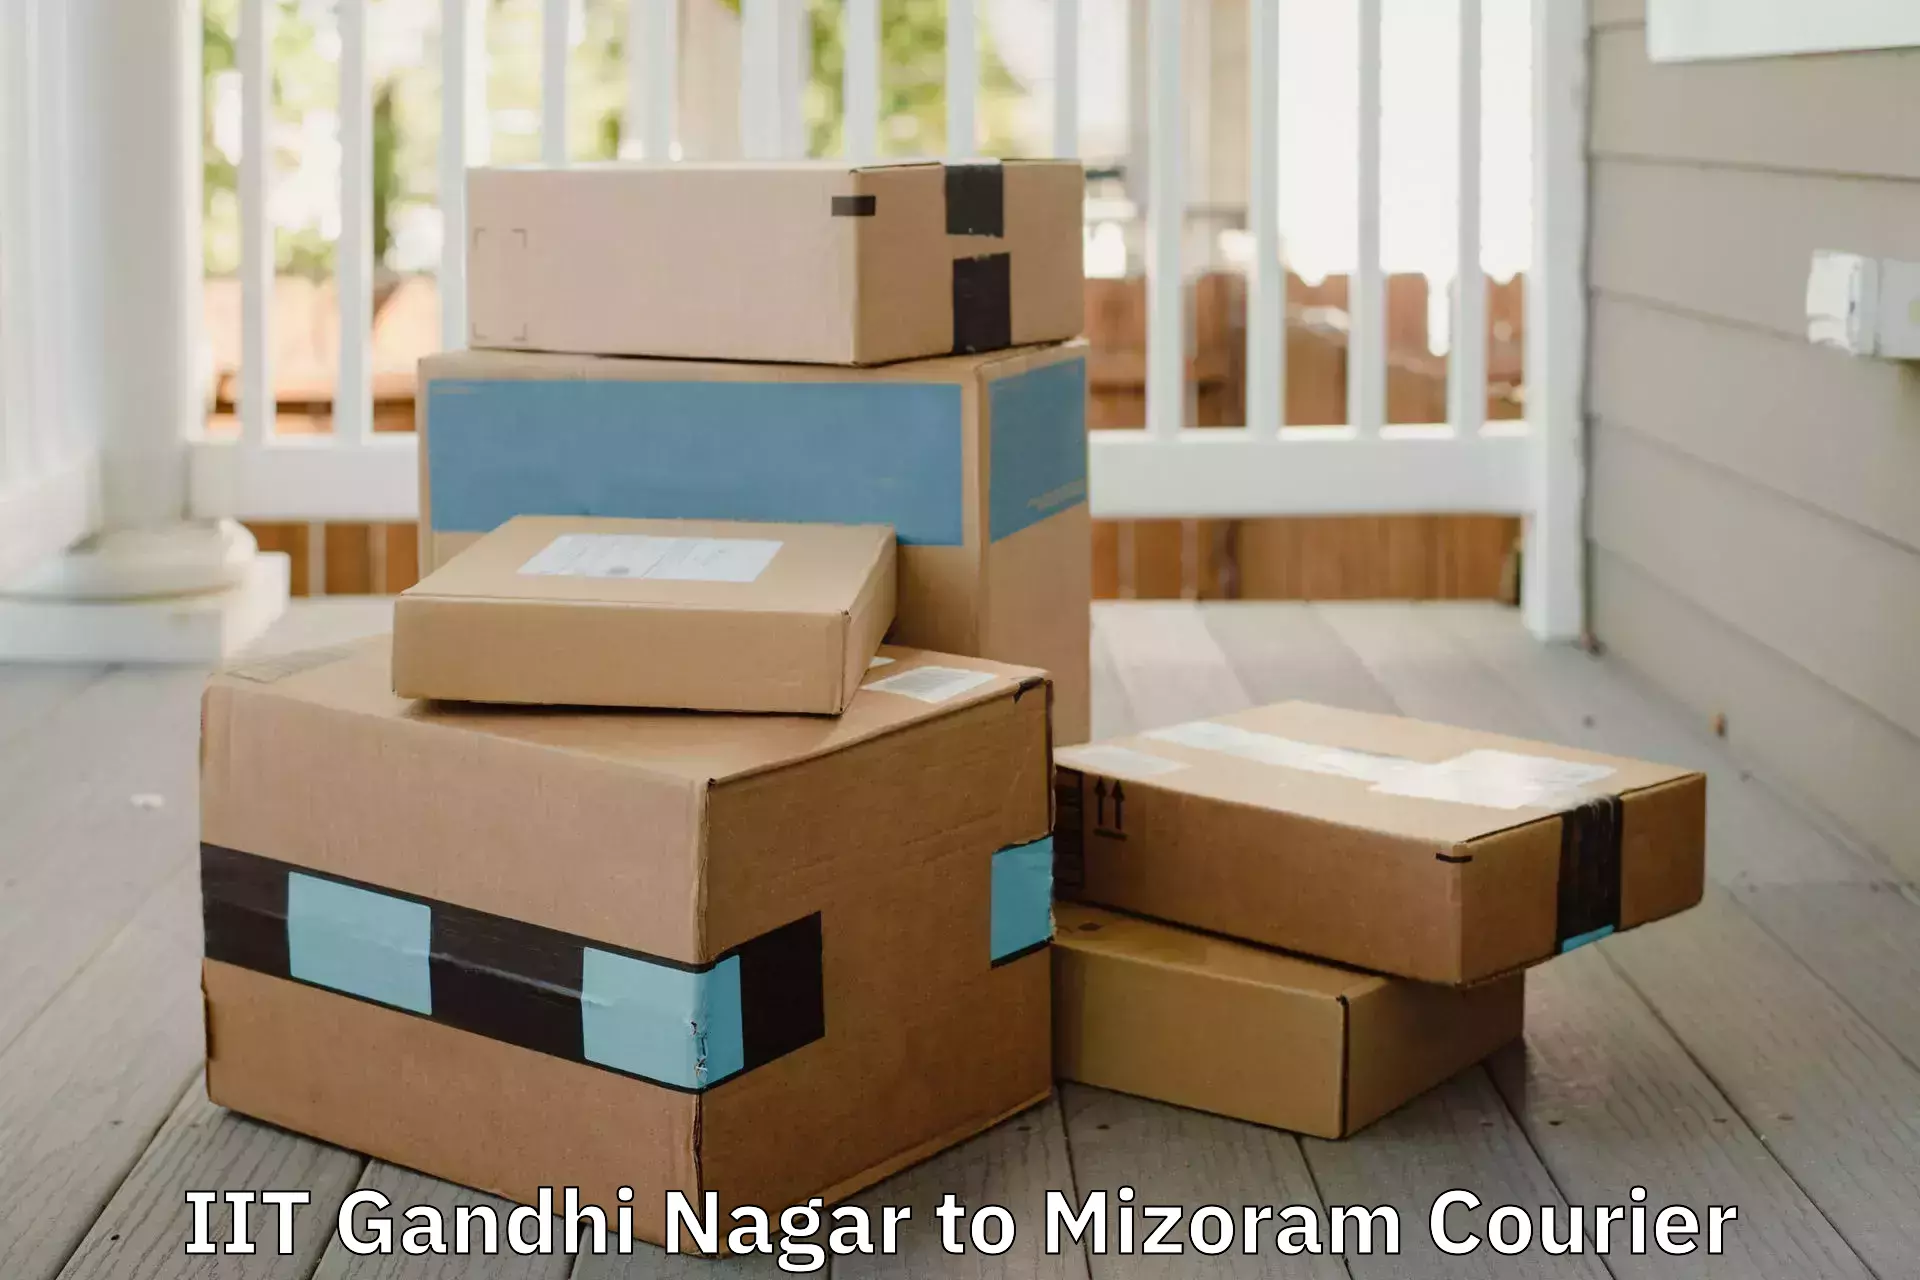 Moving and packing experts IIT Gandhi Nagar to Mizoram